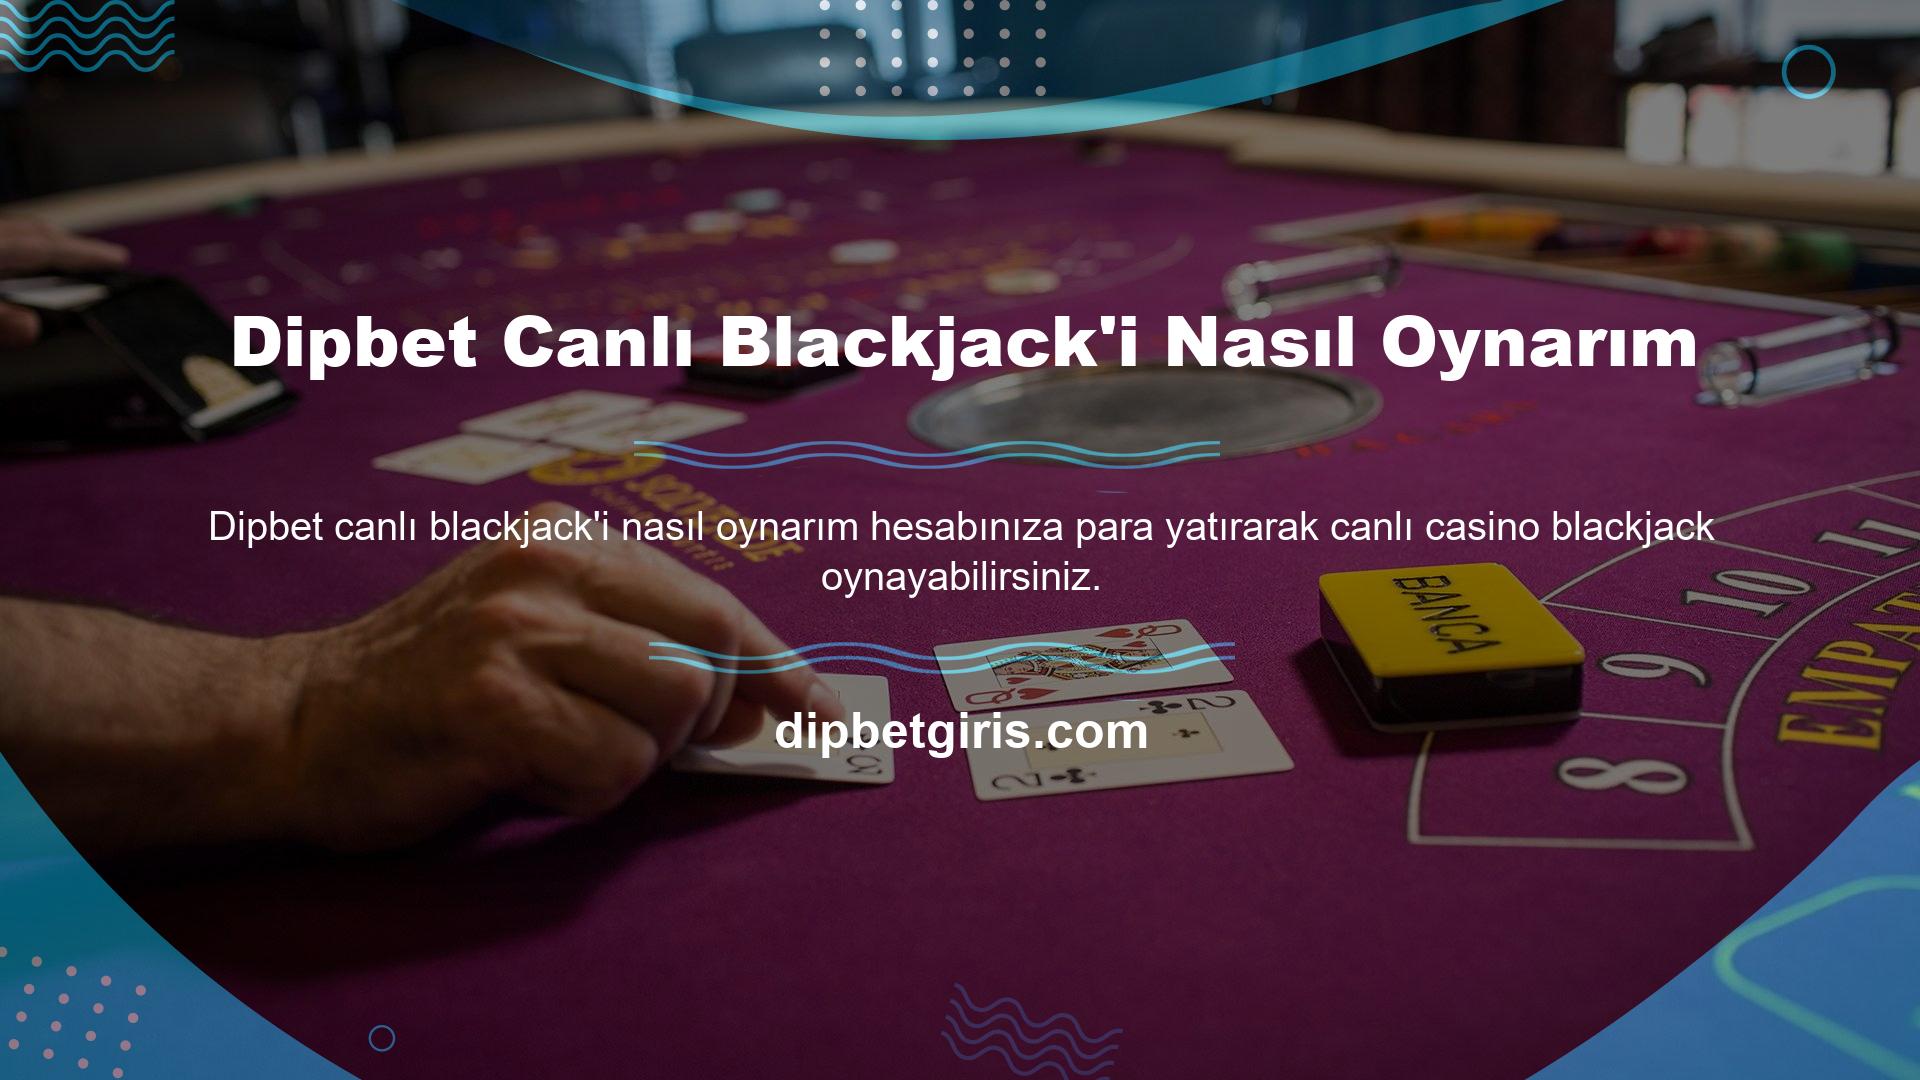 Canlı blackjack oynamak istiyorsanız kazanabileceğiniz para miktarına bir limit koymanız ve casino bağımlılığınızdan kurtulmanız gerekmektedir